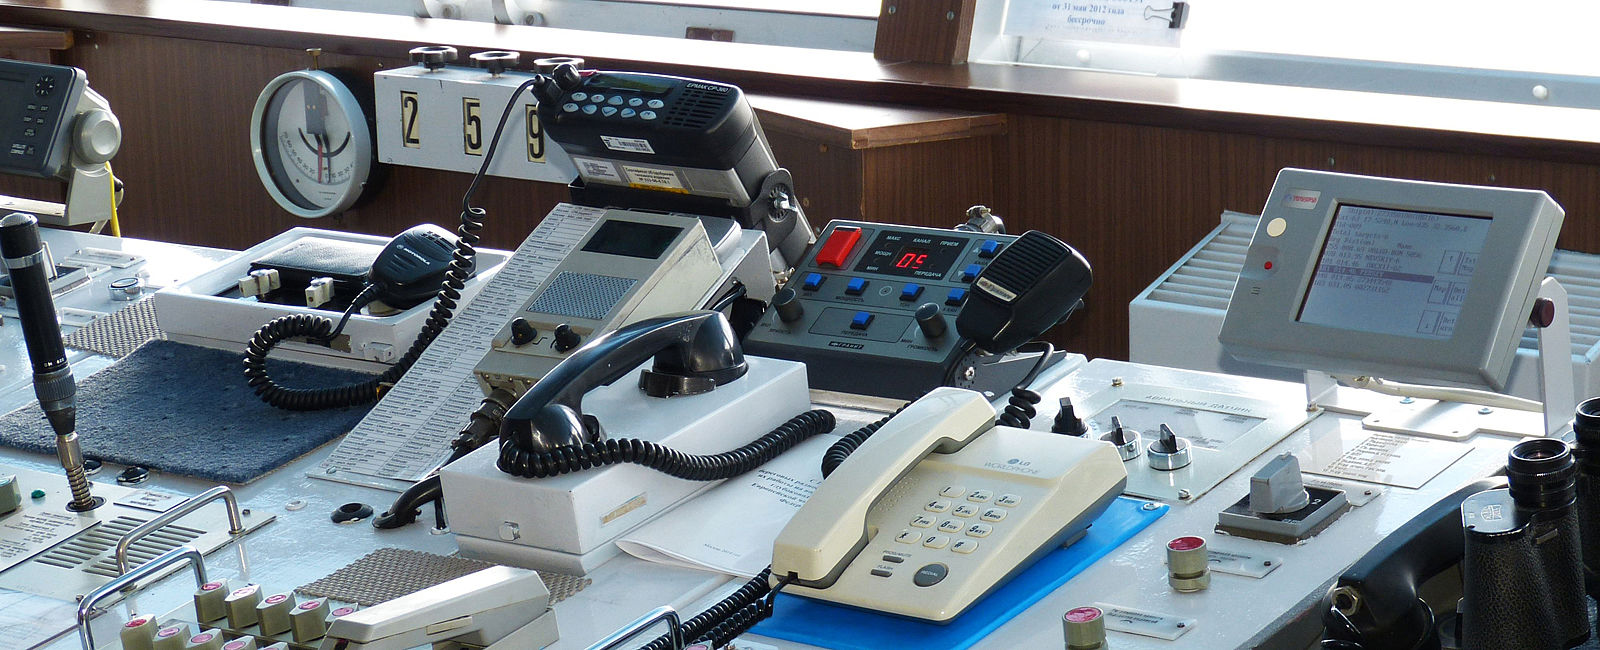 KREUZFAHRT NEWS
 TUI Cruises führt kostenfreie Bordtelefonie ein 
